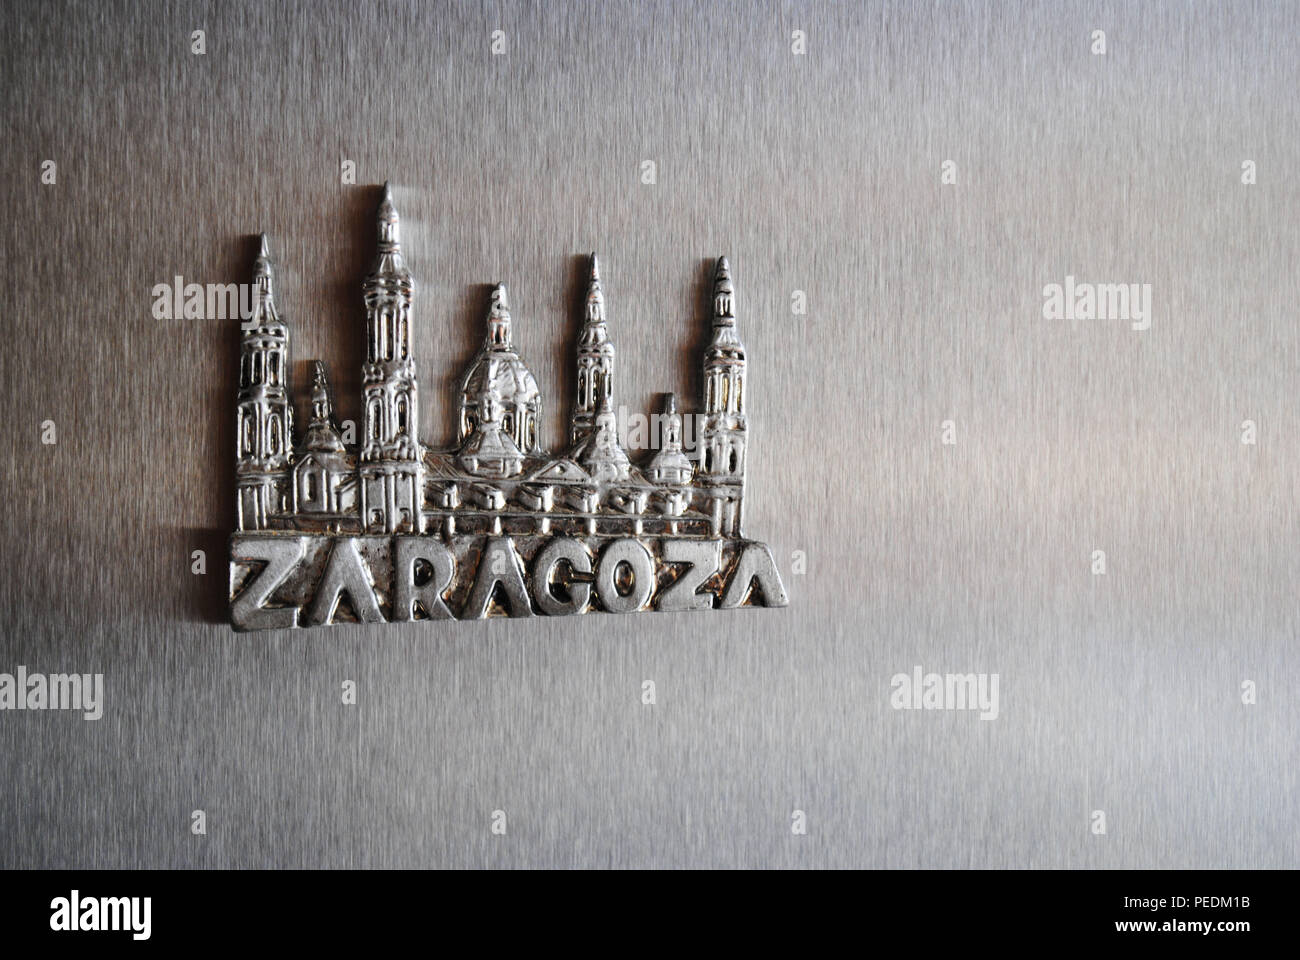 Un souvenir magnete frigo da Zaragoza, Spagna, grazie all'eccezionale Cattedrale-basilica della Madonna del Pilastro. Foto Stock